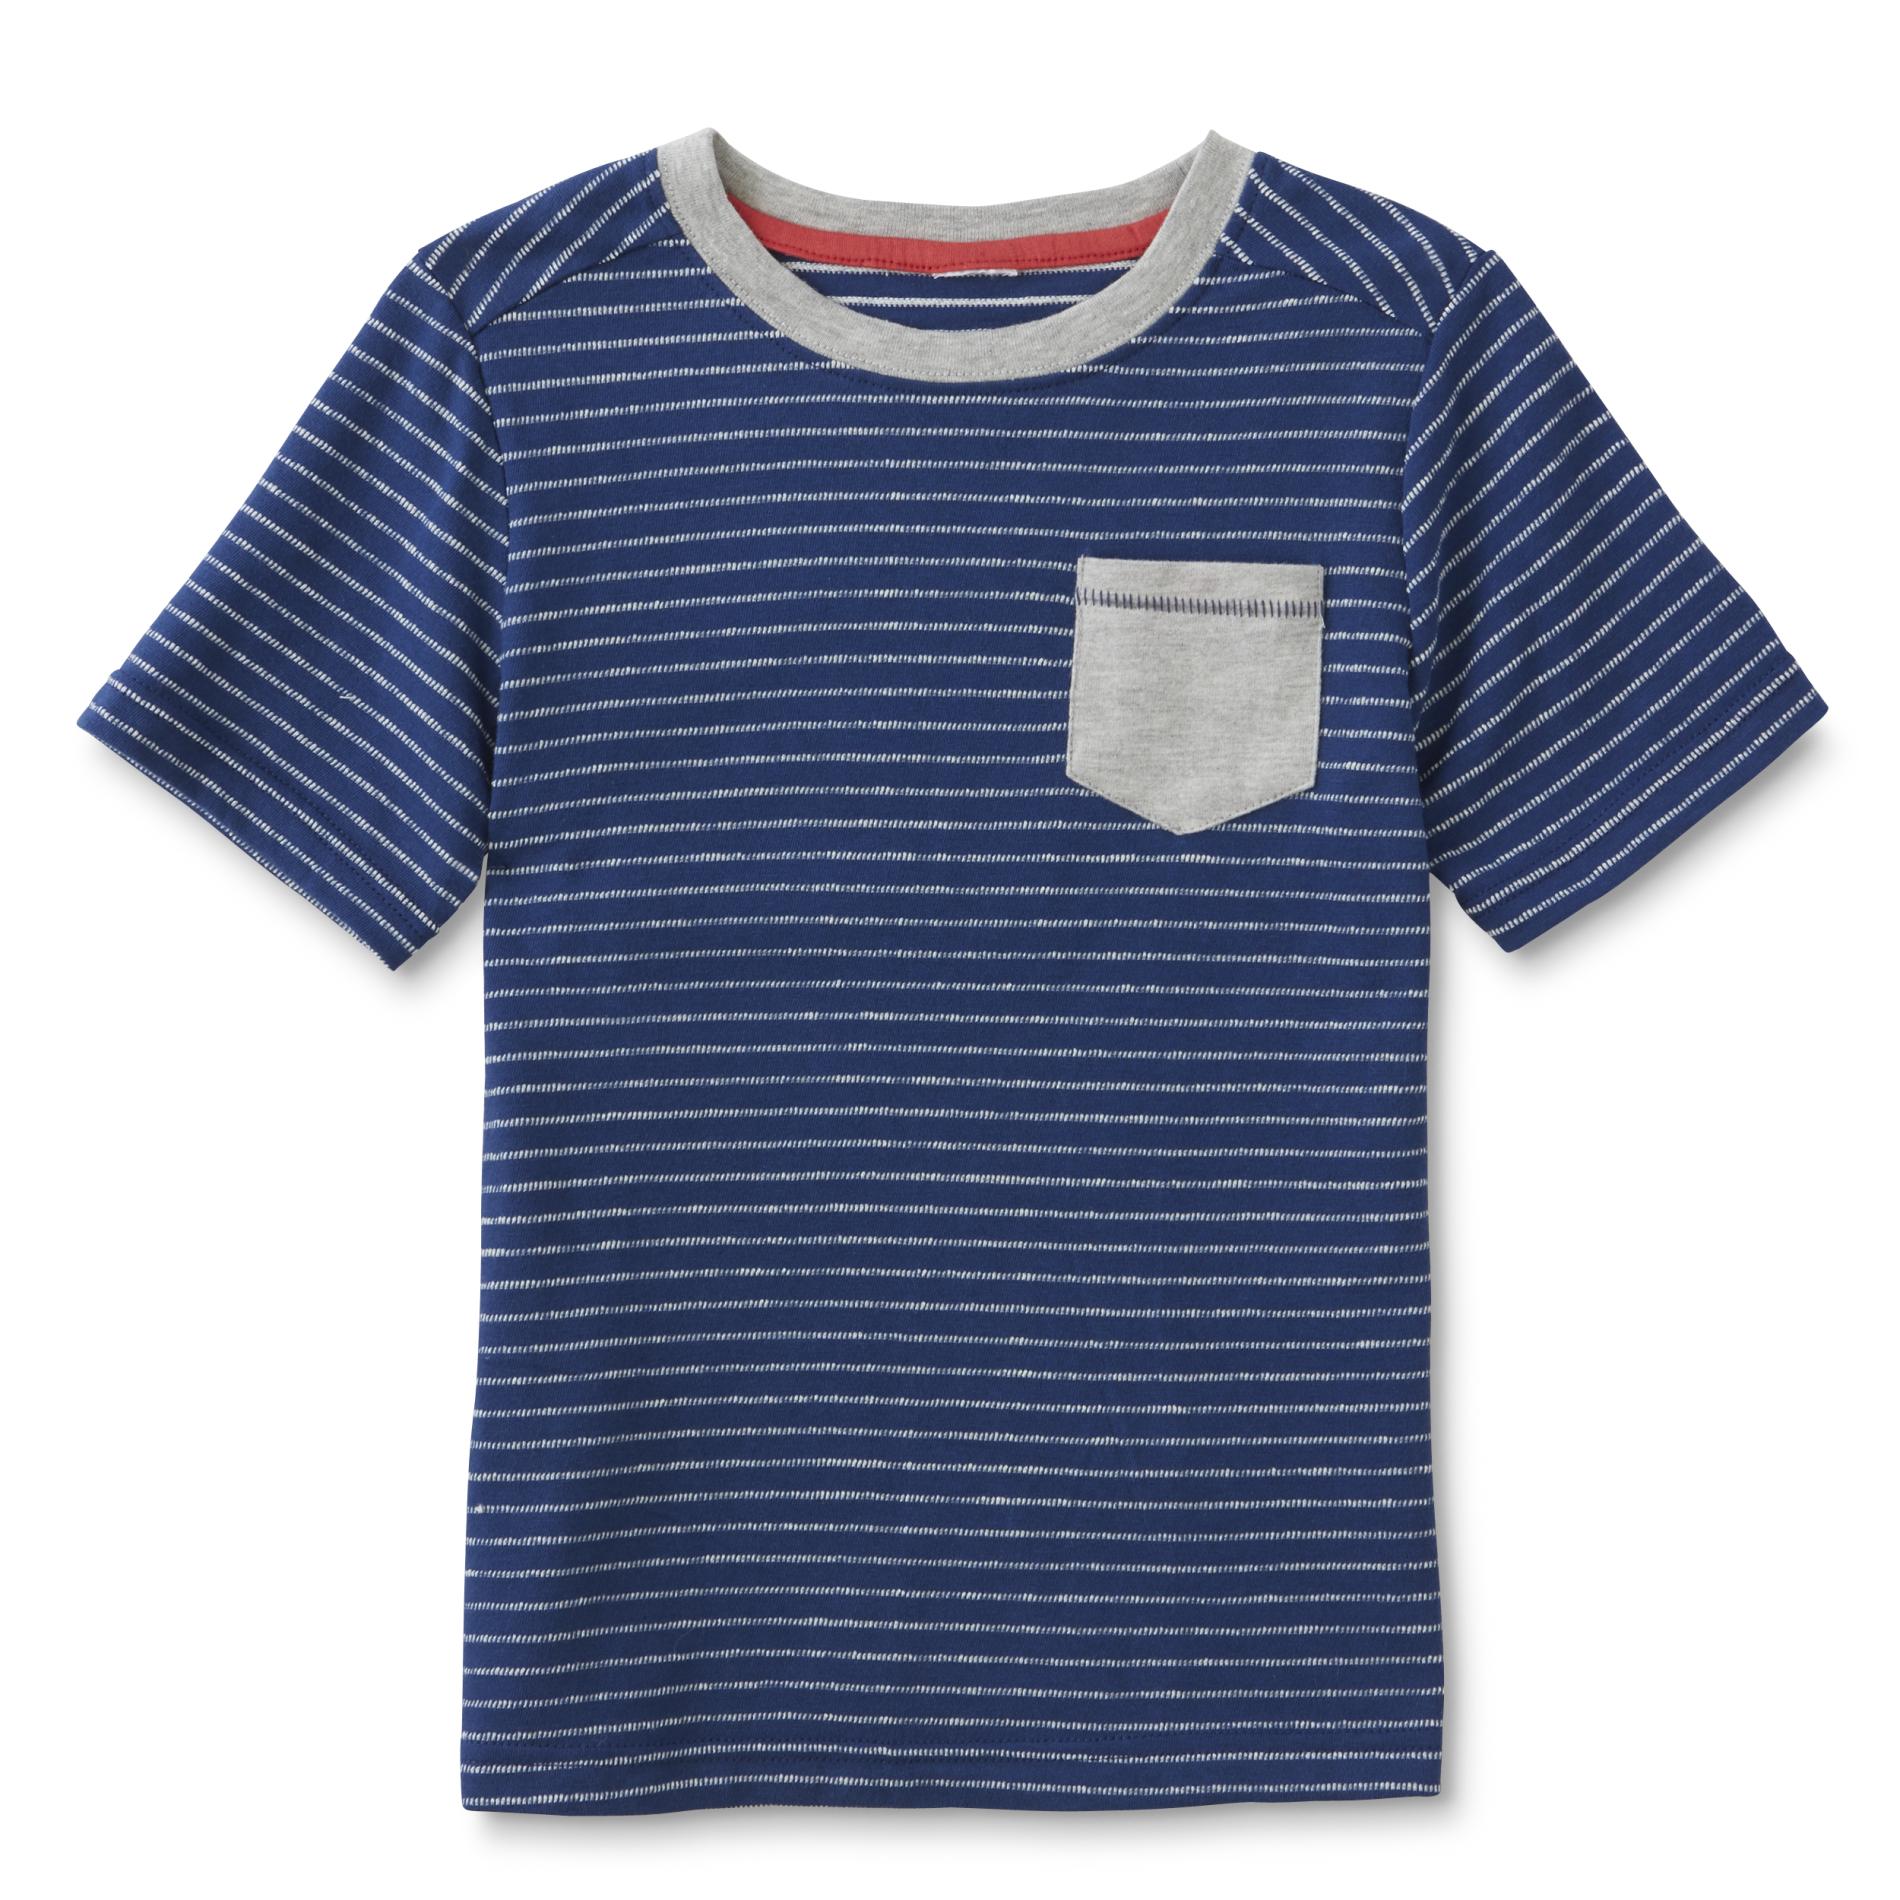 Toughskins Boy's Pocket T-Shirt - Striped